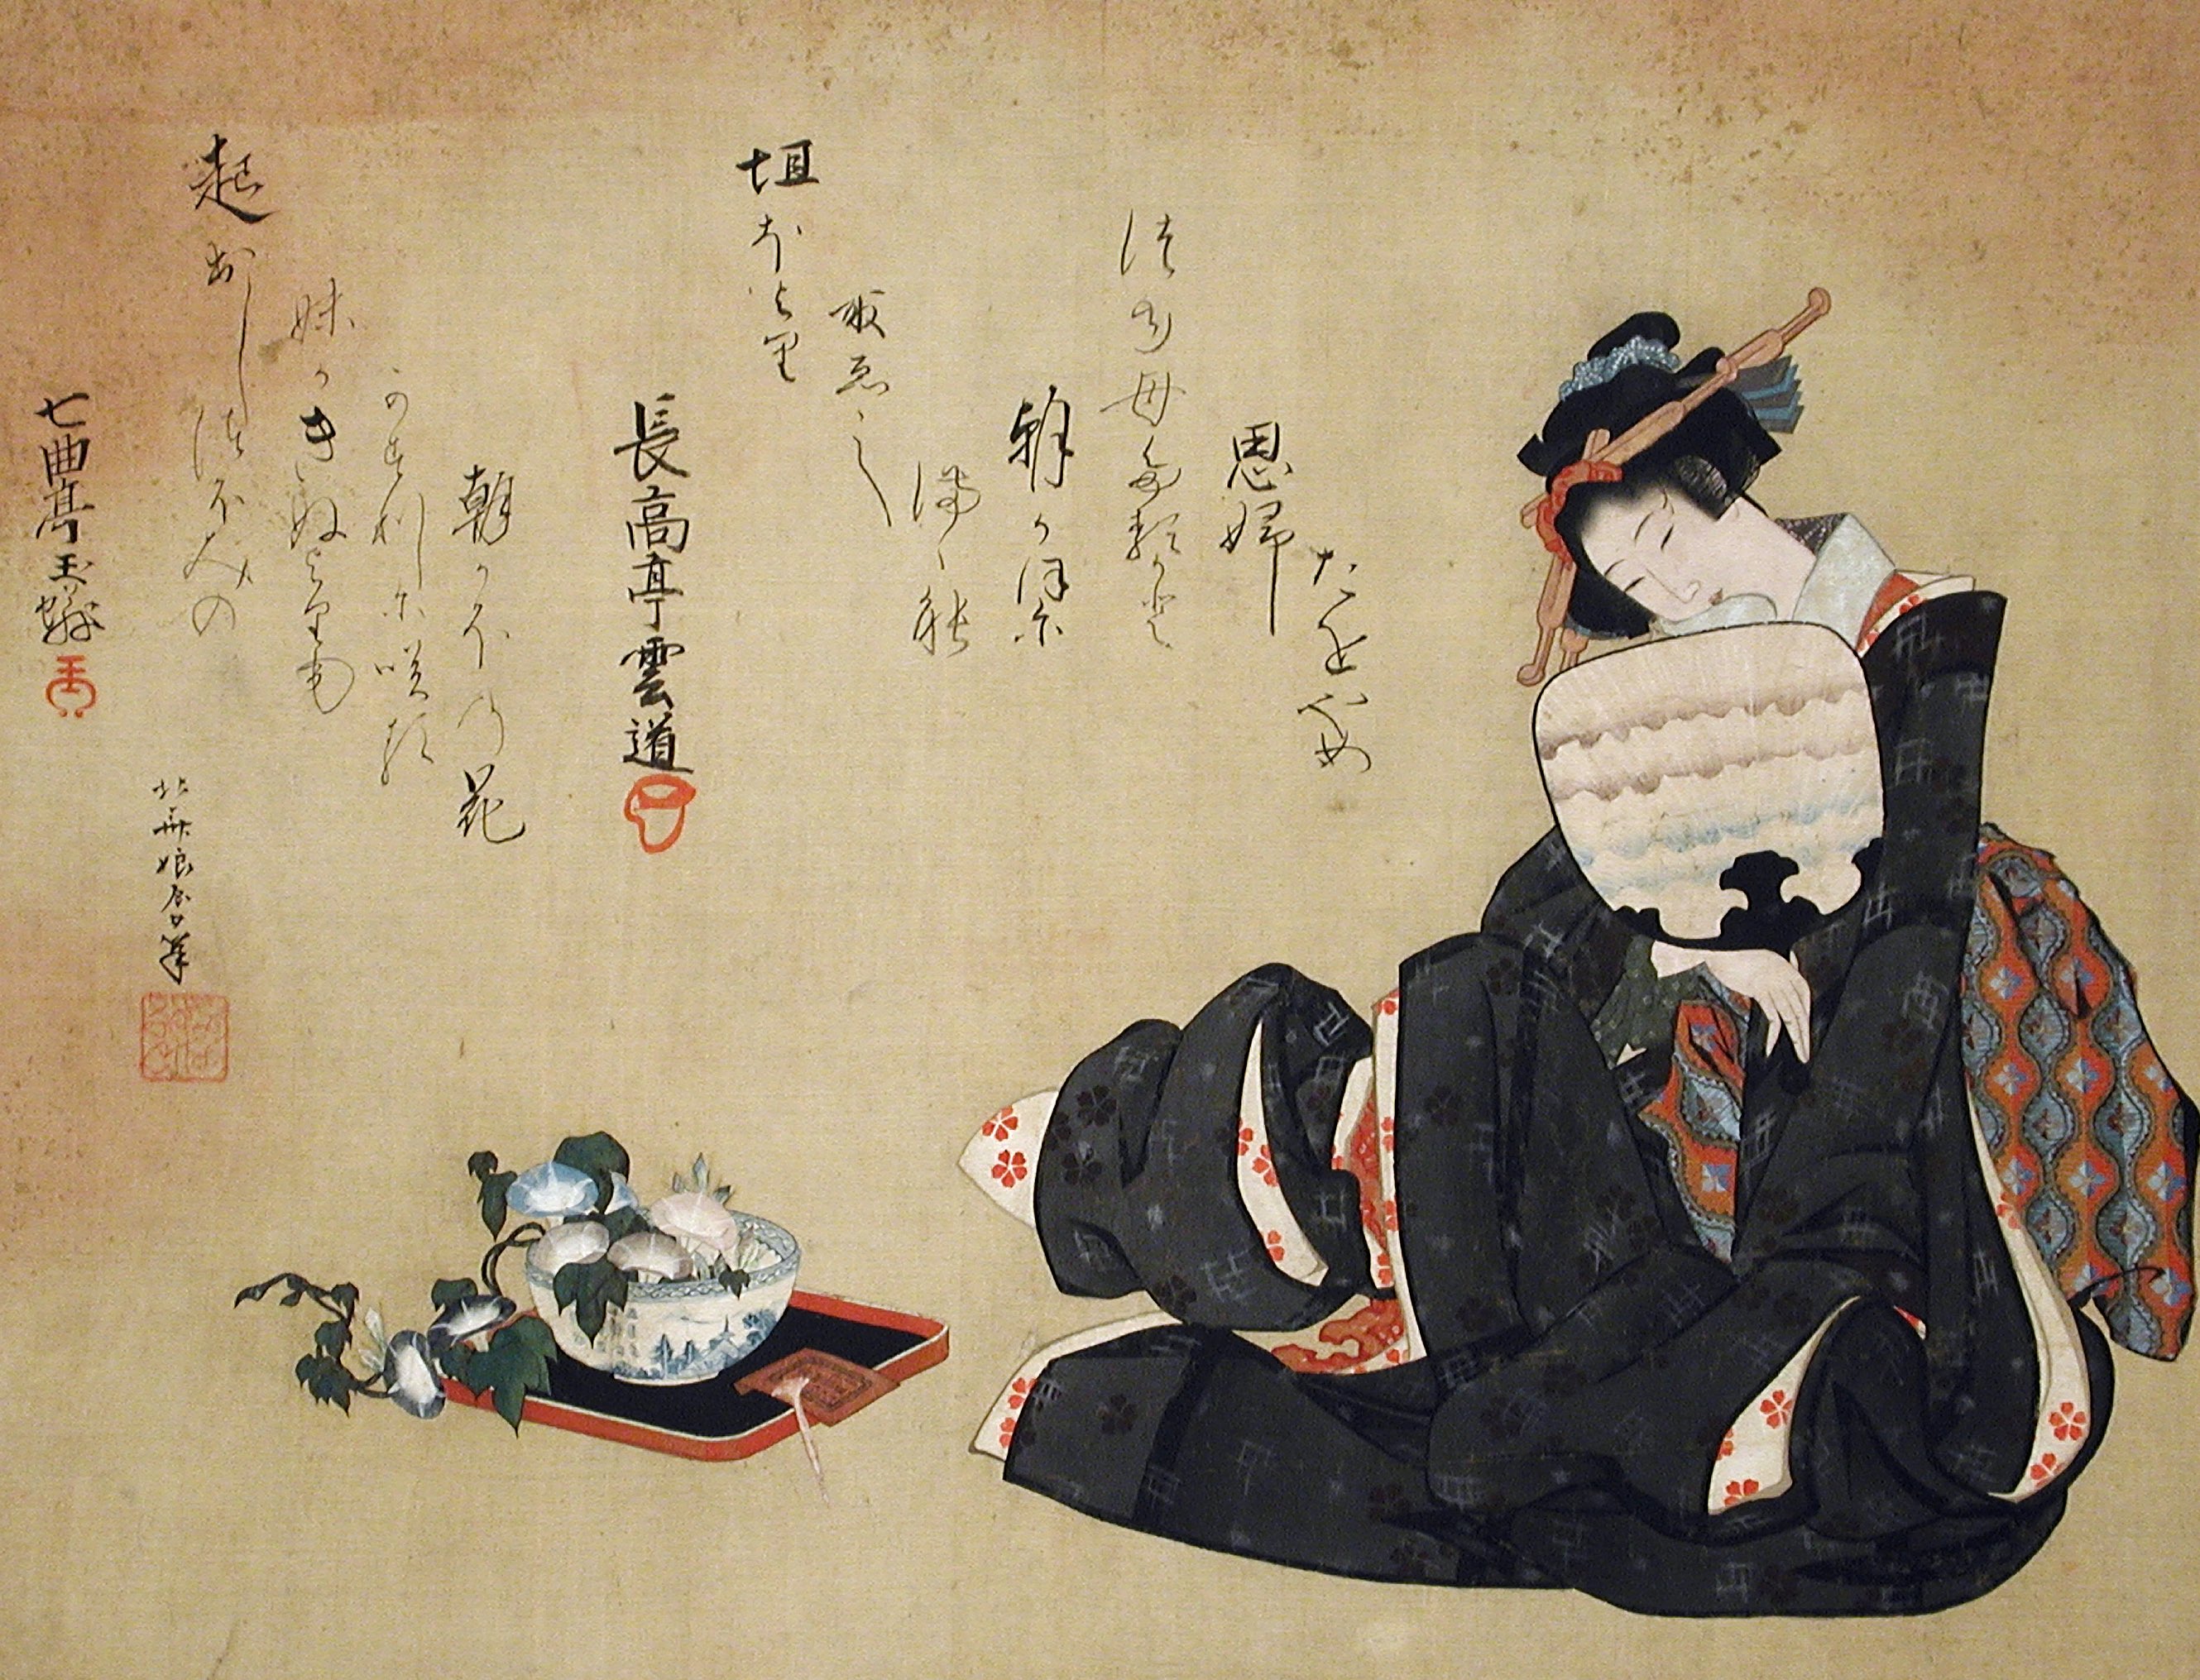 女人與牽牛花 by Katsushika Ōi - 約 1820 年代 - 34.2 x 44.8 釐米 